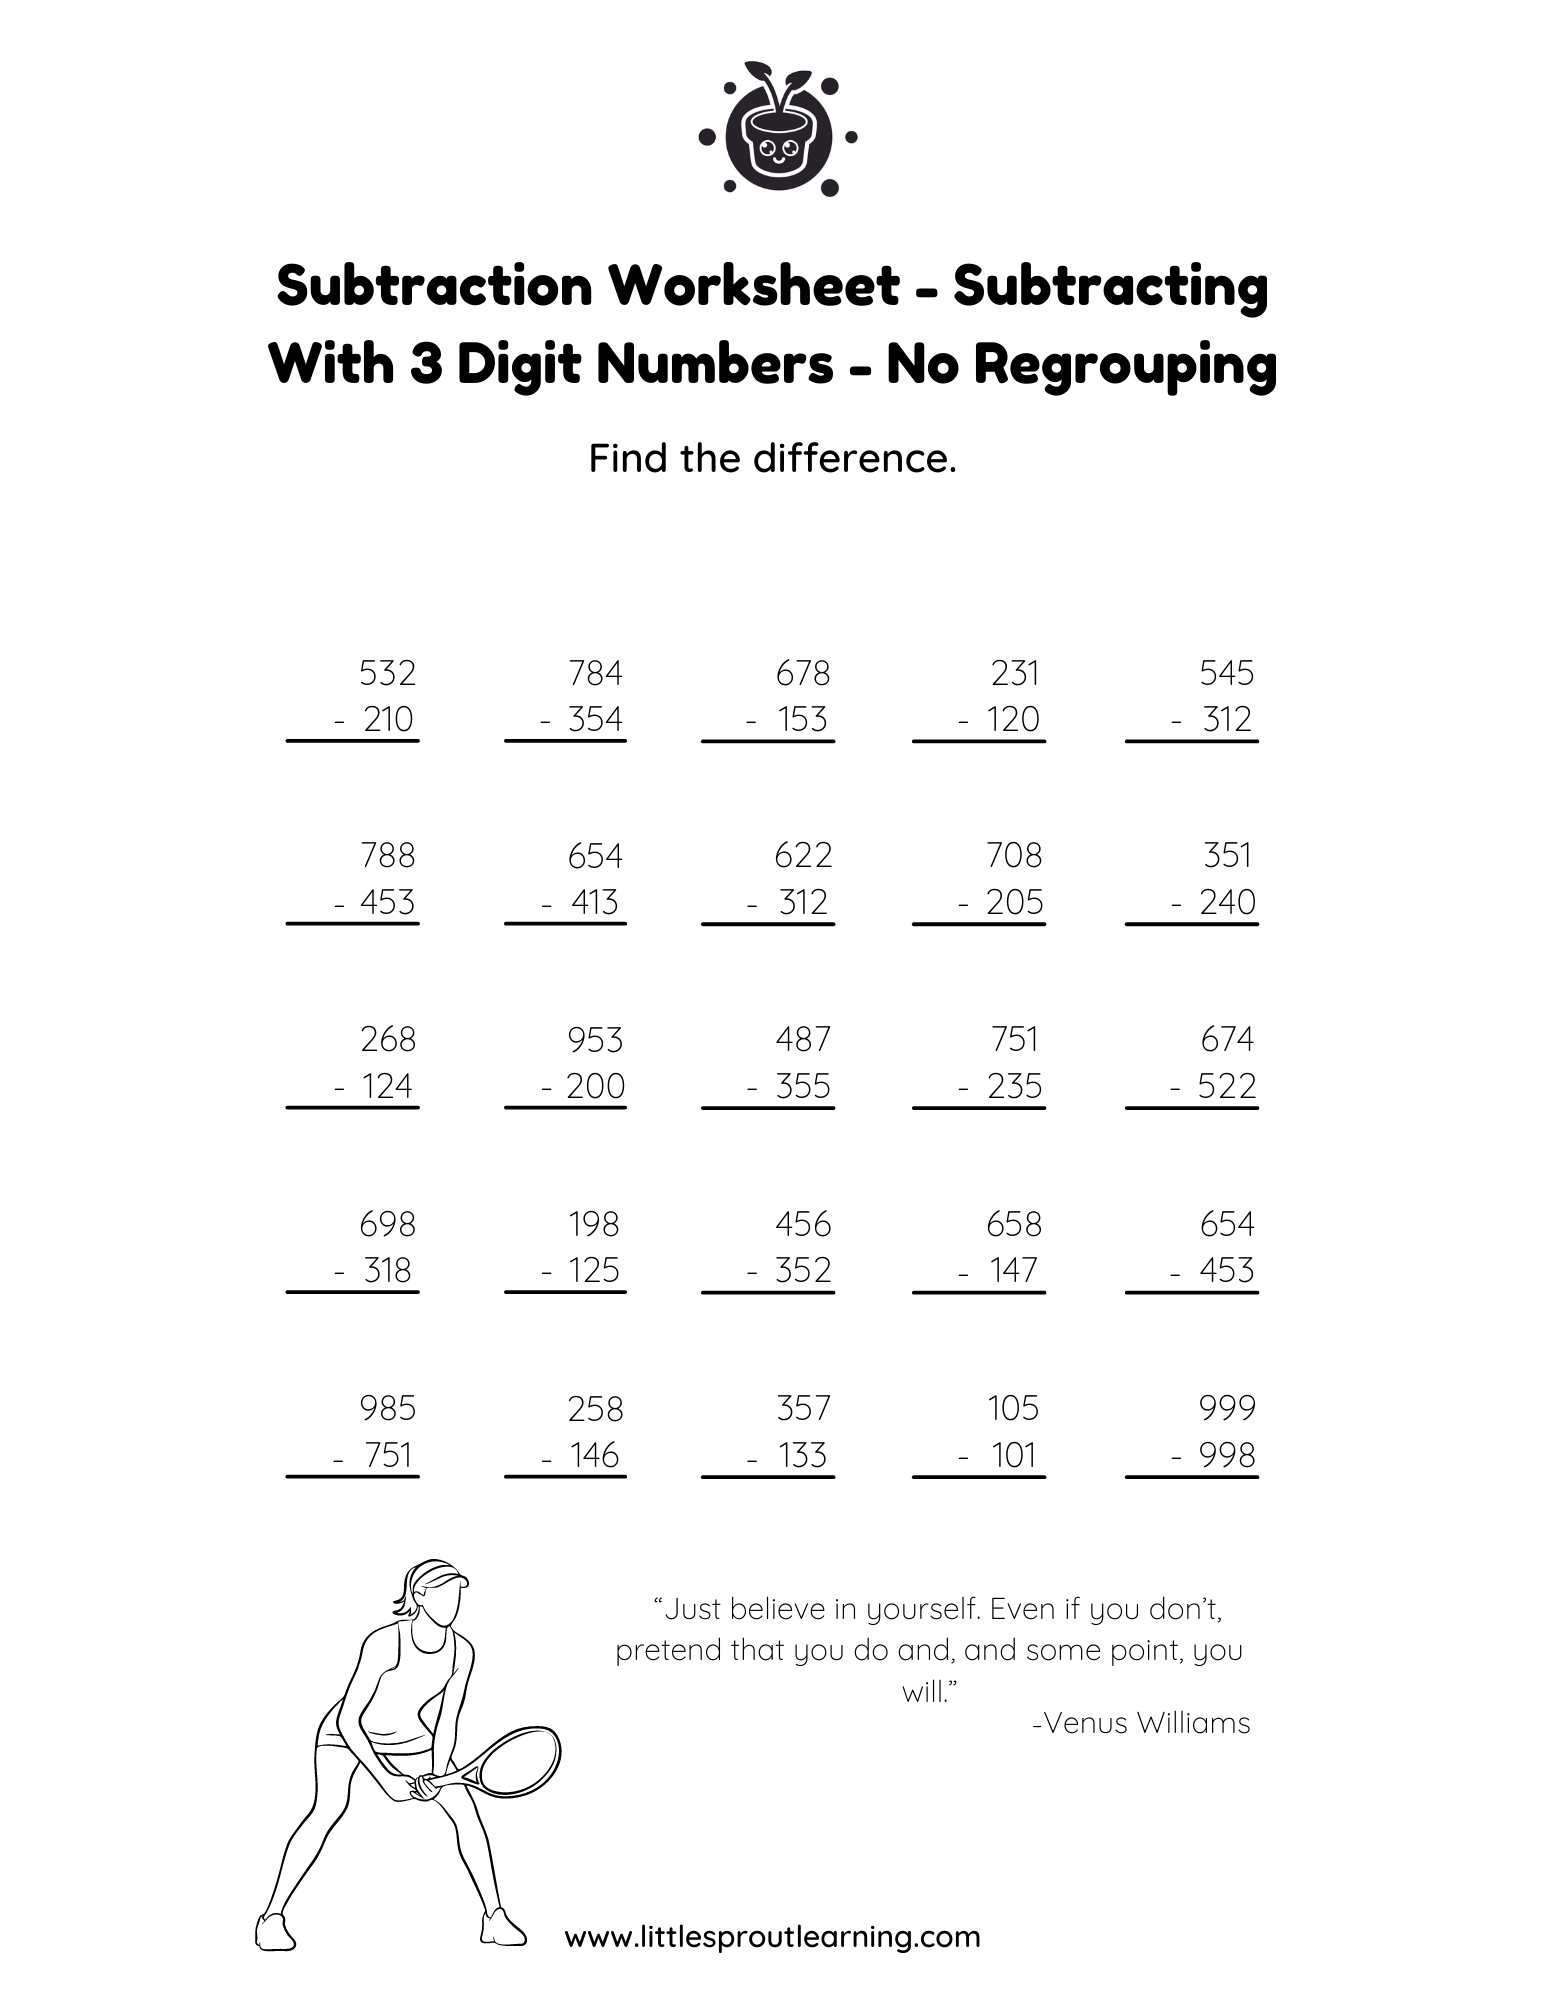 Subtracting in Columns – Subtracting 3 Digit Numbers